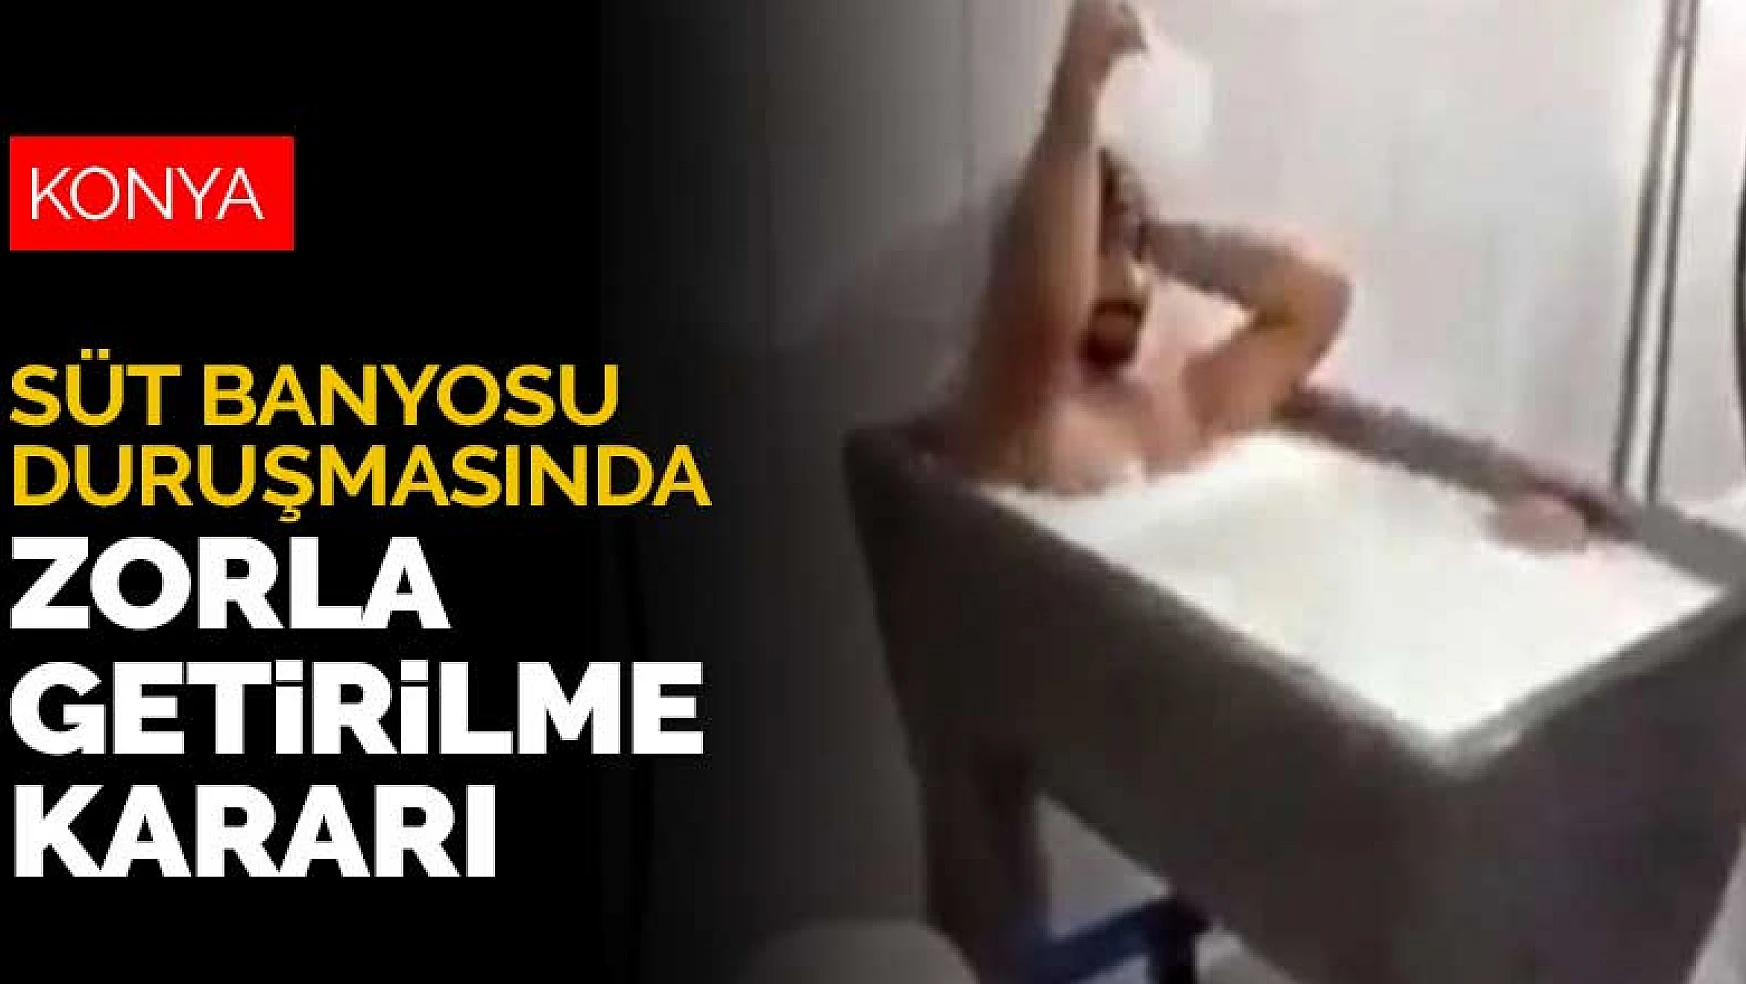 Konya'daki kazanda süt banyosu olayının yeni duruşması görüldü! Şahit zorla getirilecek